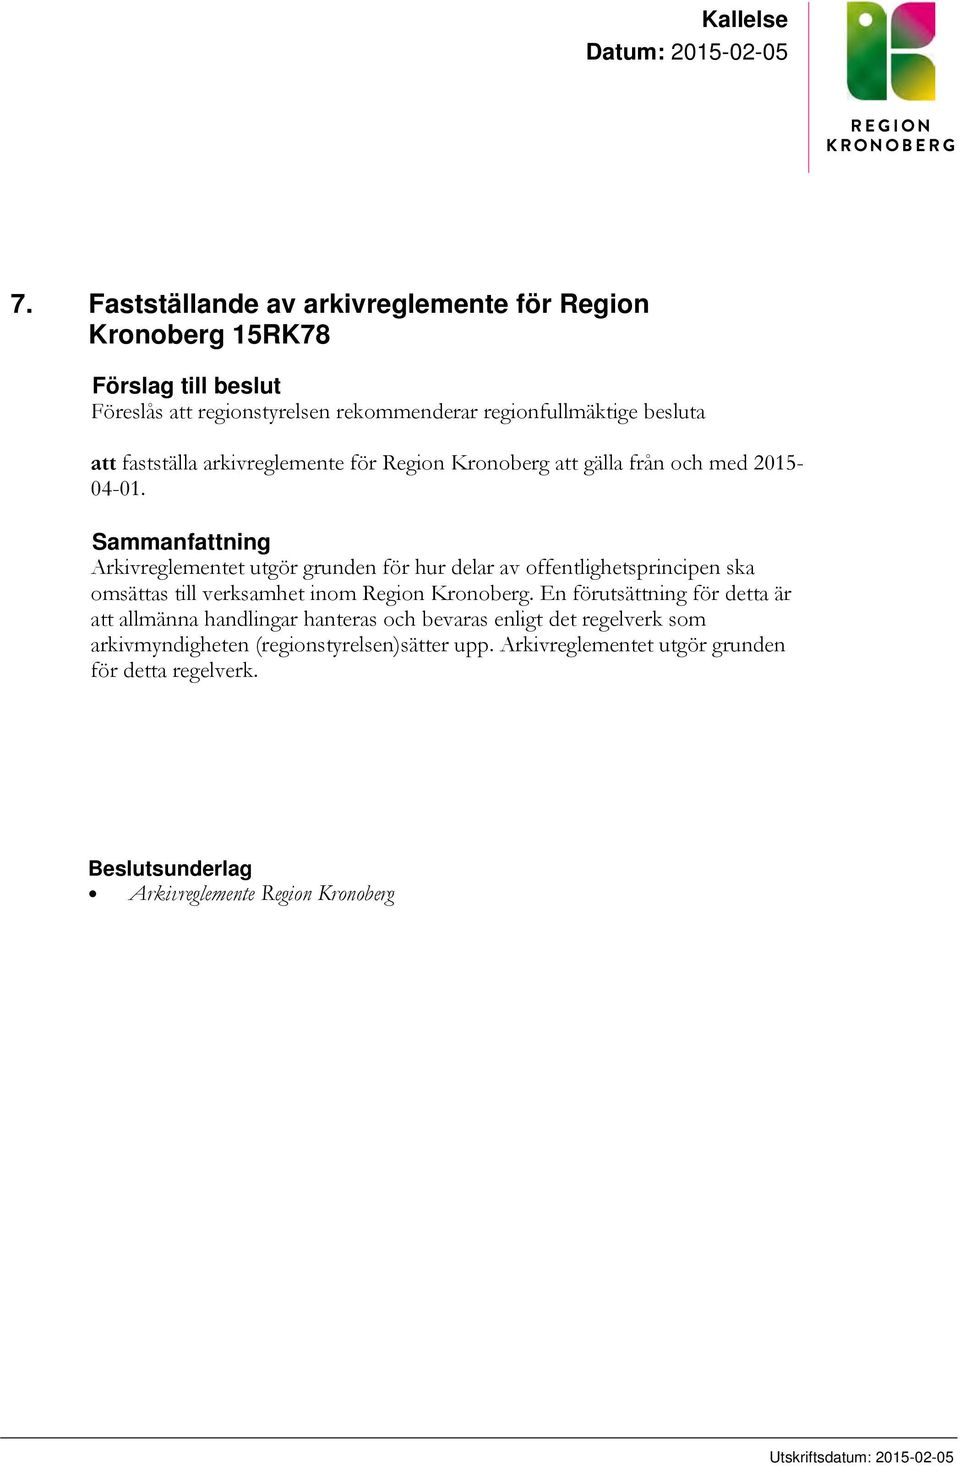 arkivreglemente för Region Kronoberg att gälla från och med 2015-04-01.